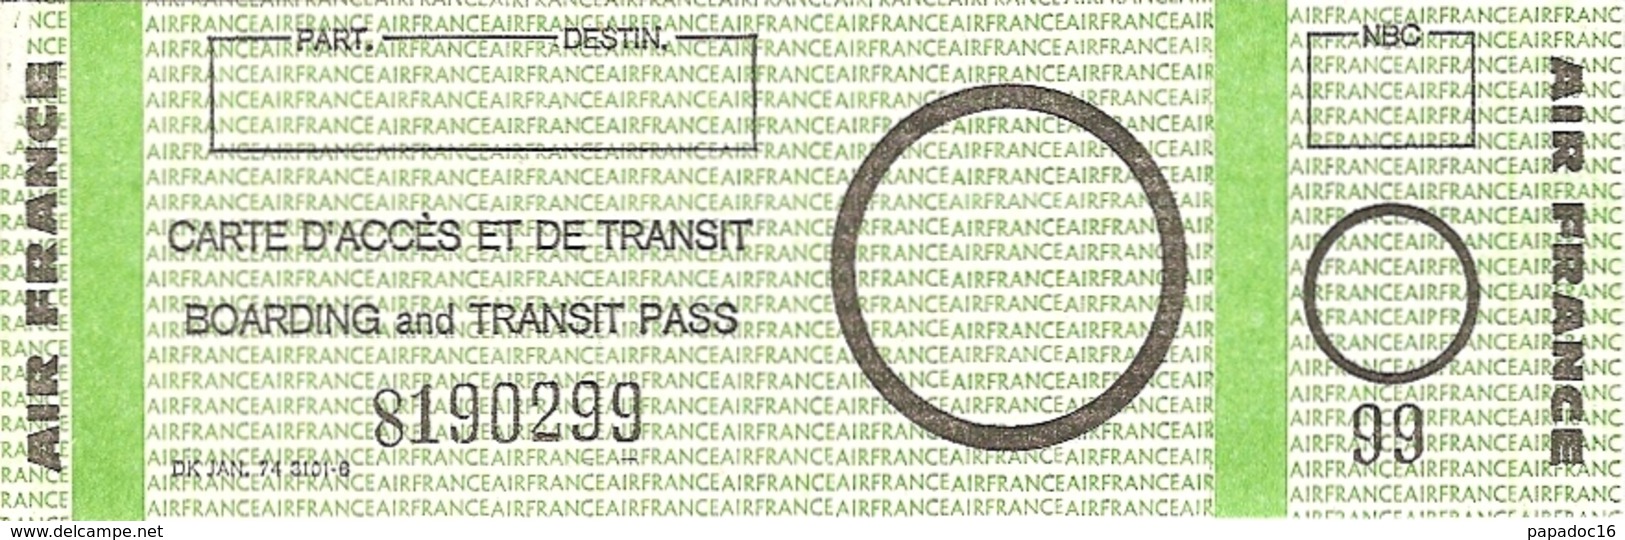 Carte D'accès Et De Transit / Boarding And Transit Pass - Air France (1976) Recto - Europa